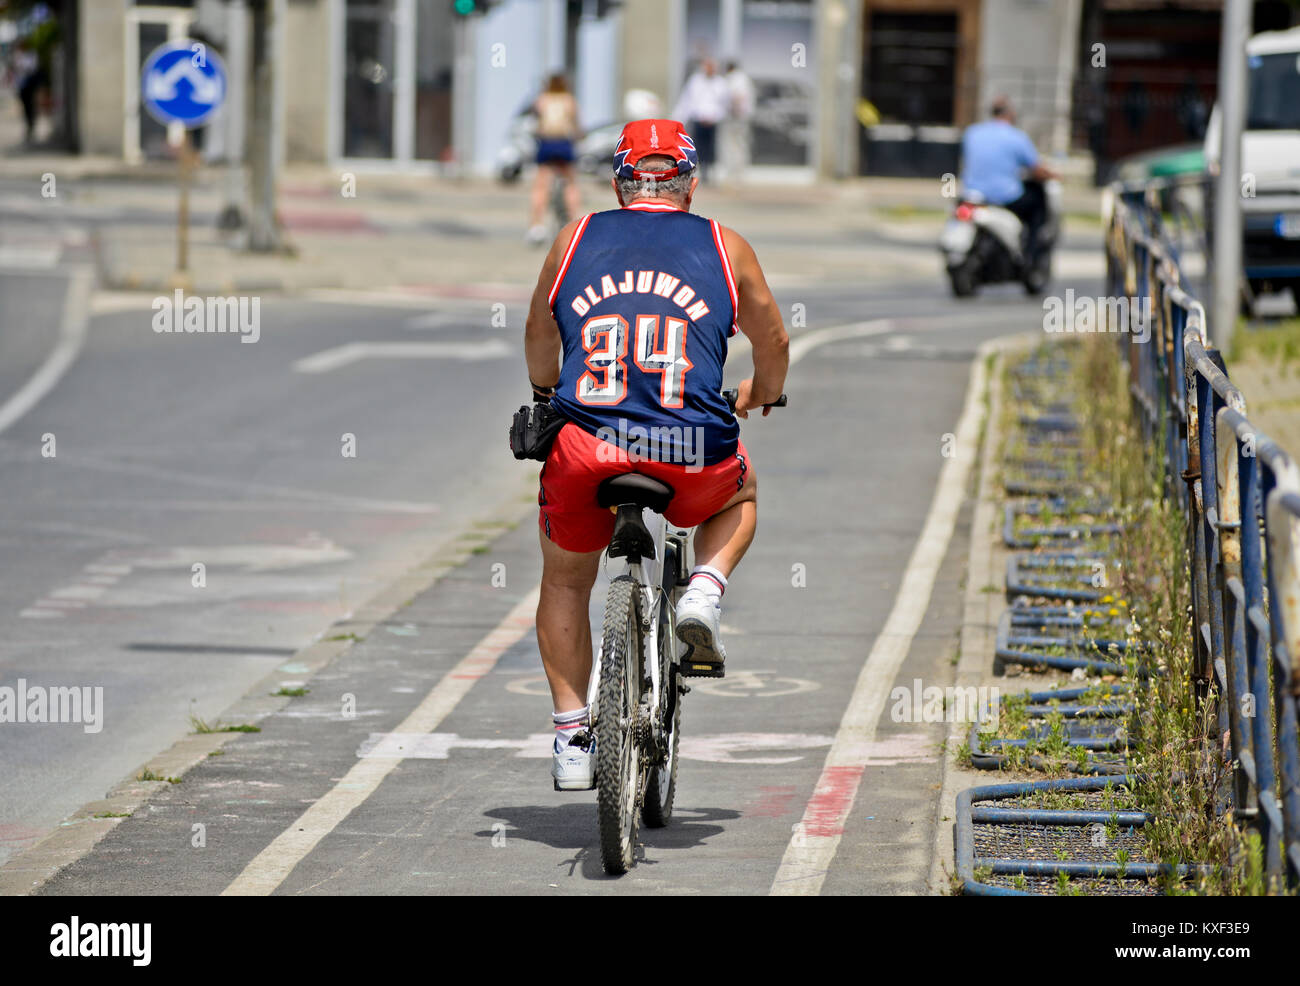 Un hombre montado en bicicleta llevando una camiseta de baloncesto (Hakeem Olajuwon, Houston Rockets). Skopje, Macedonia Fotografía de stock - Alamy